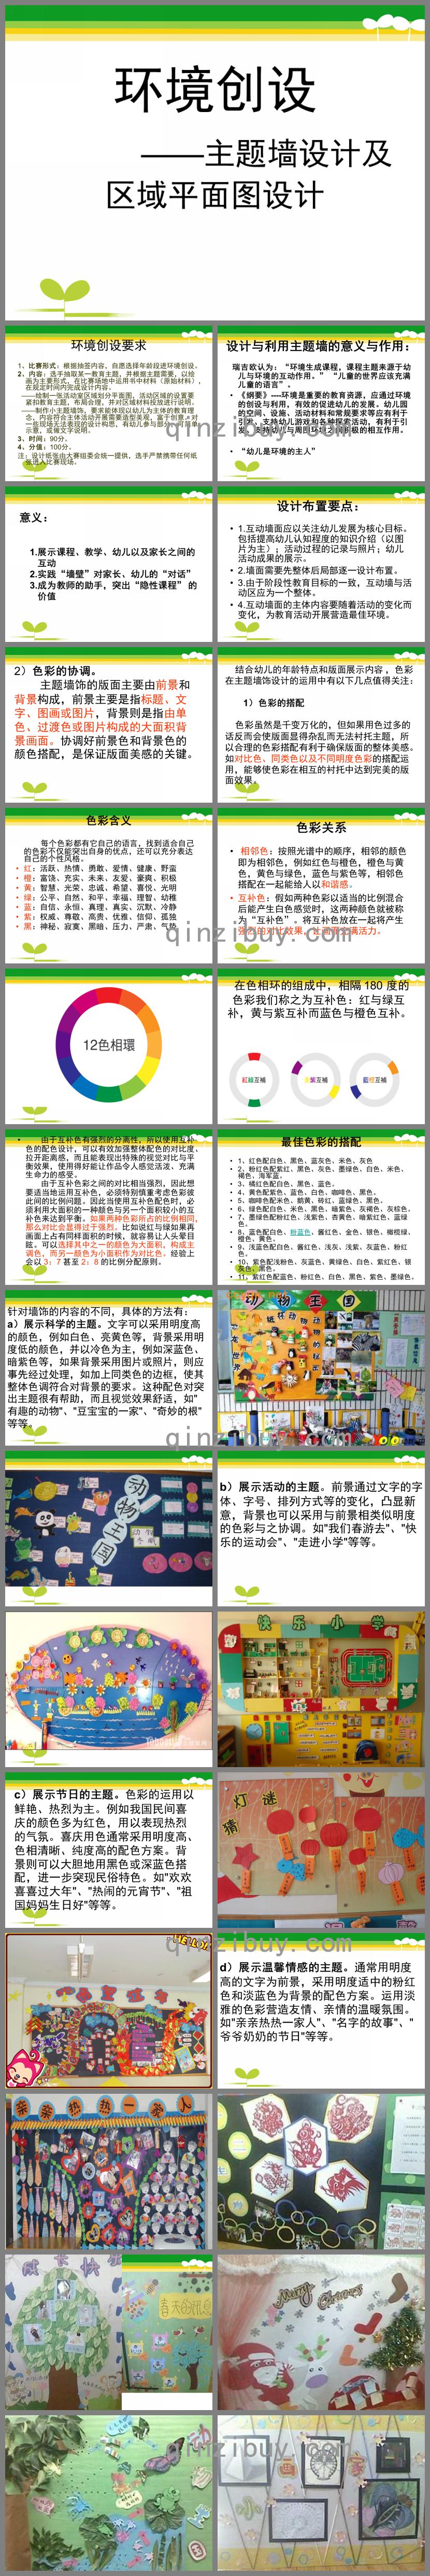 幼儿园环境创设——主题墙设计及区域平面图设计PPT课件